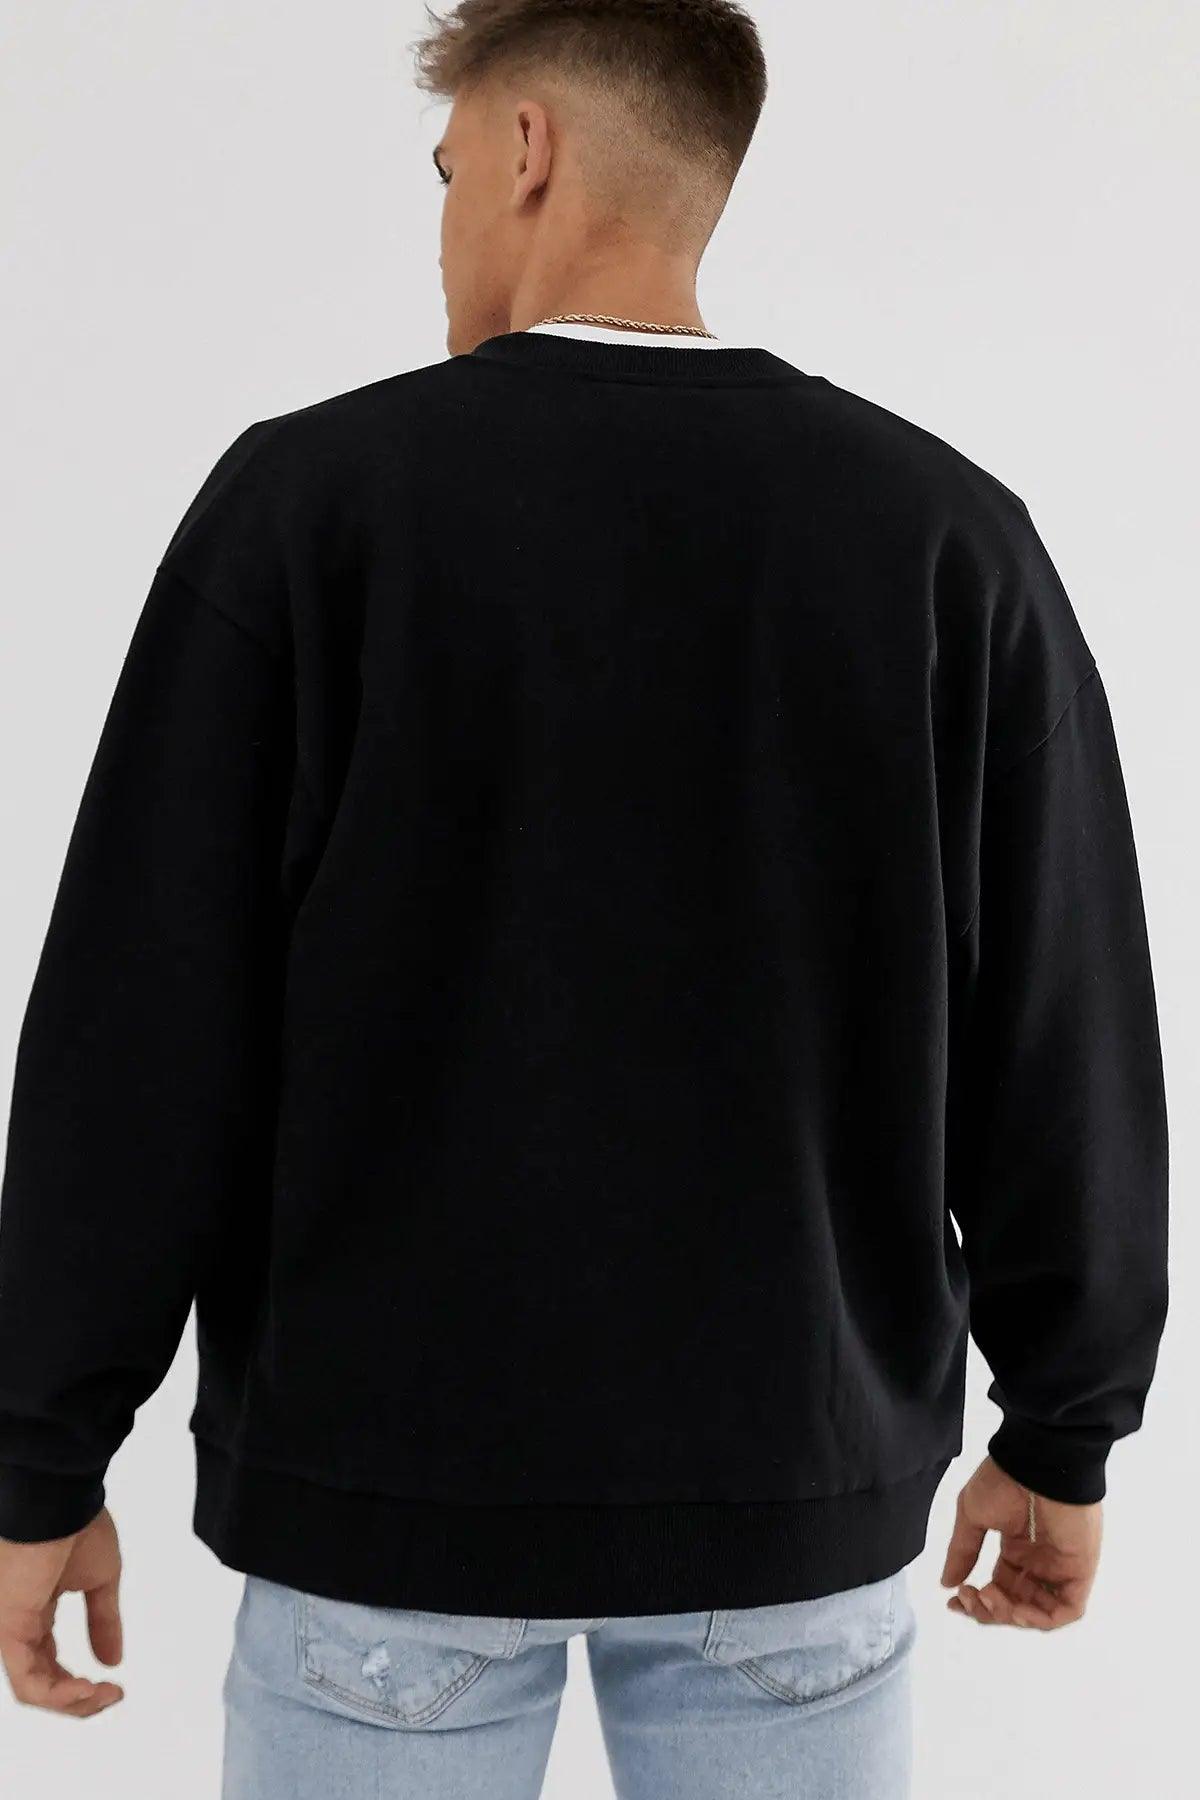 Antique Oversize Erkek Sweatshirt - PΛSΛGE